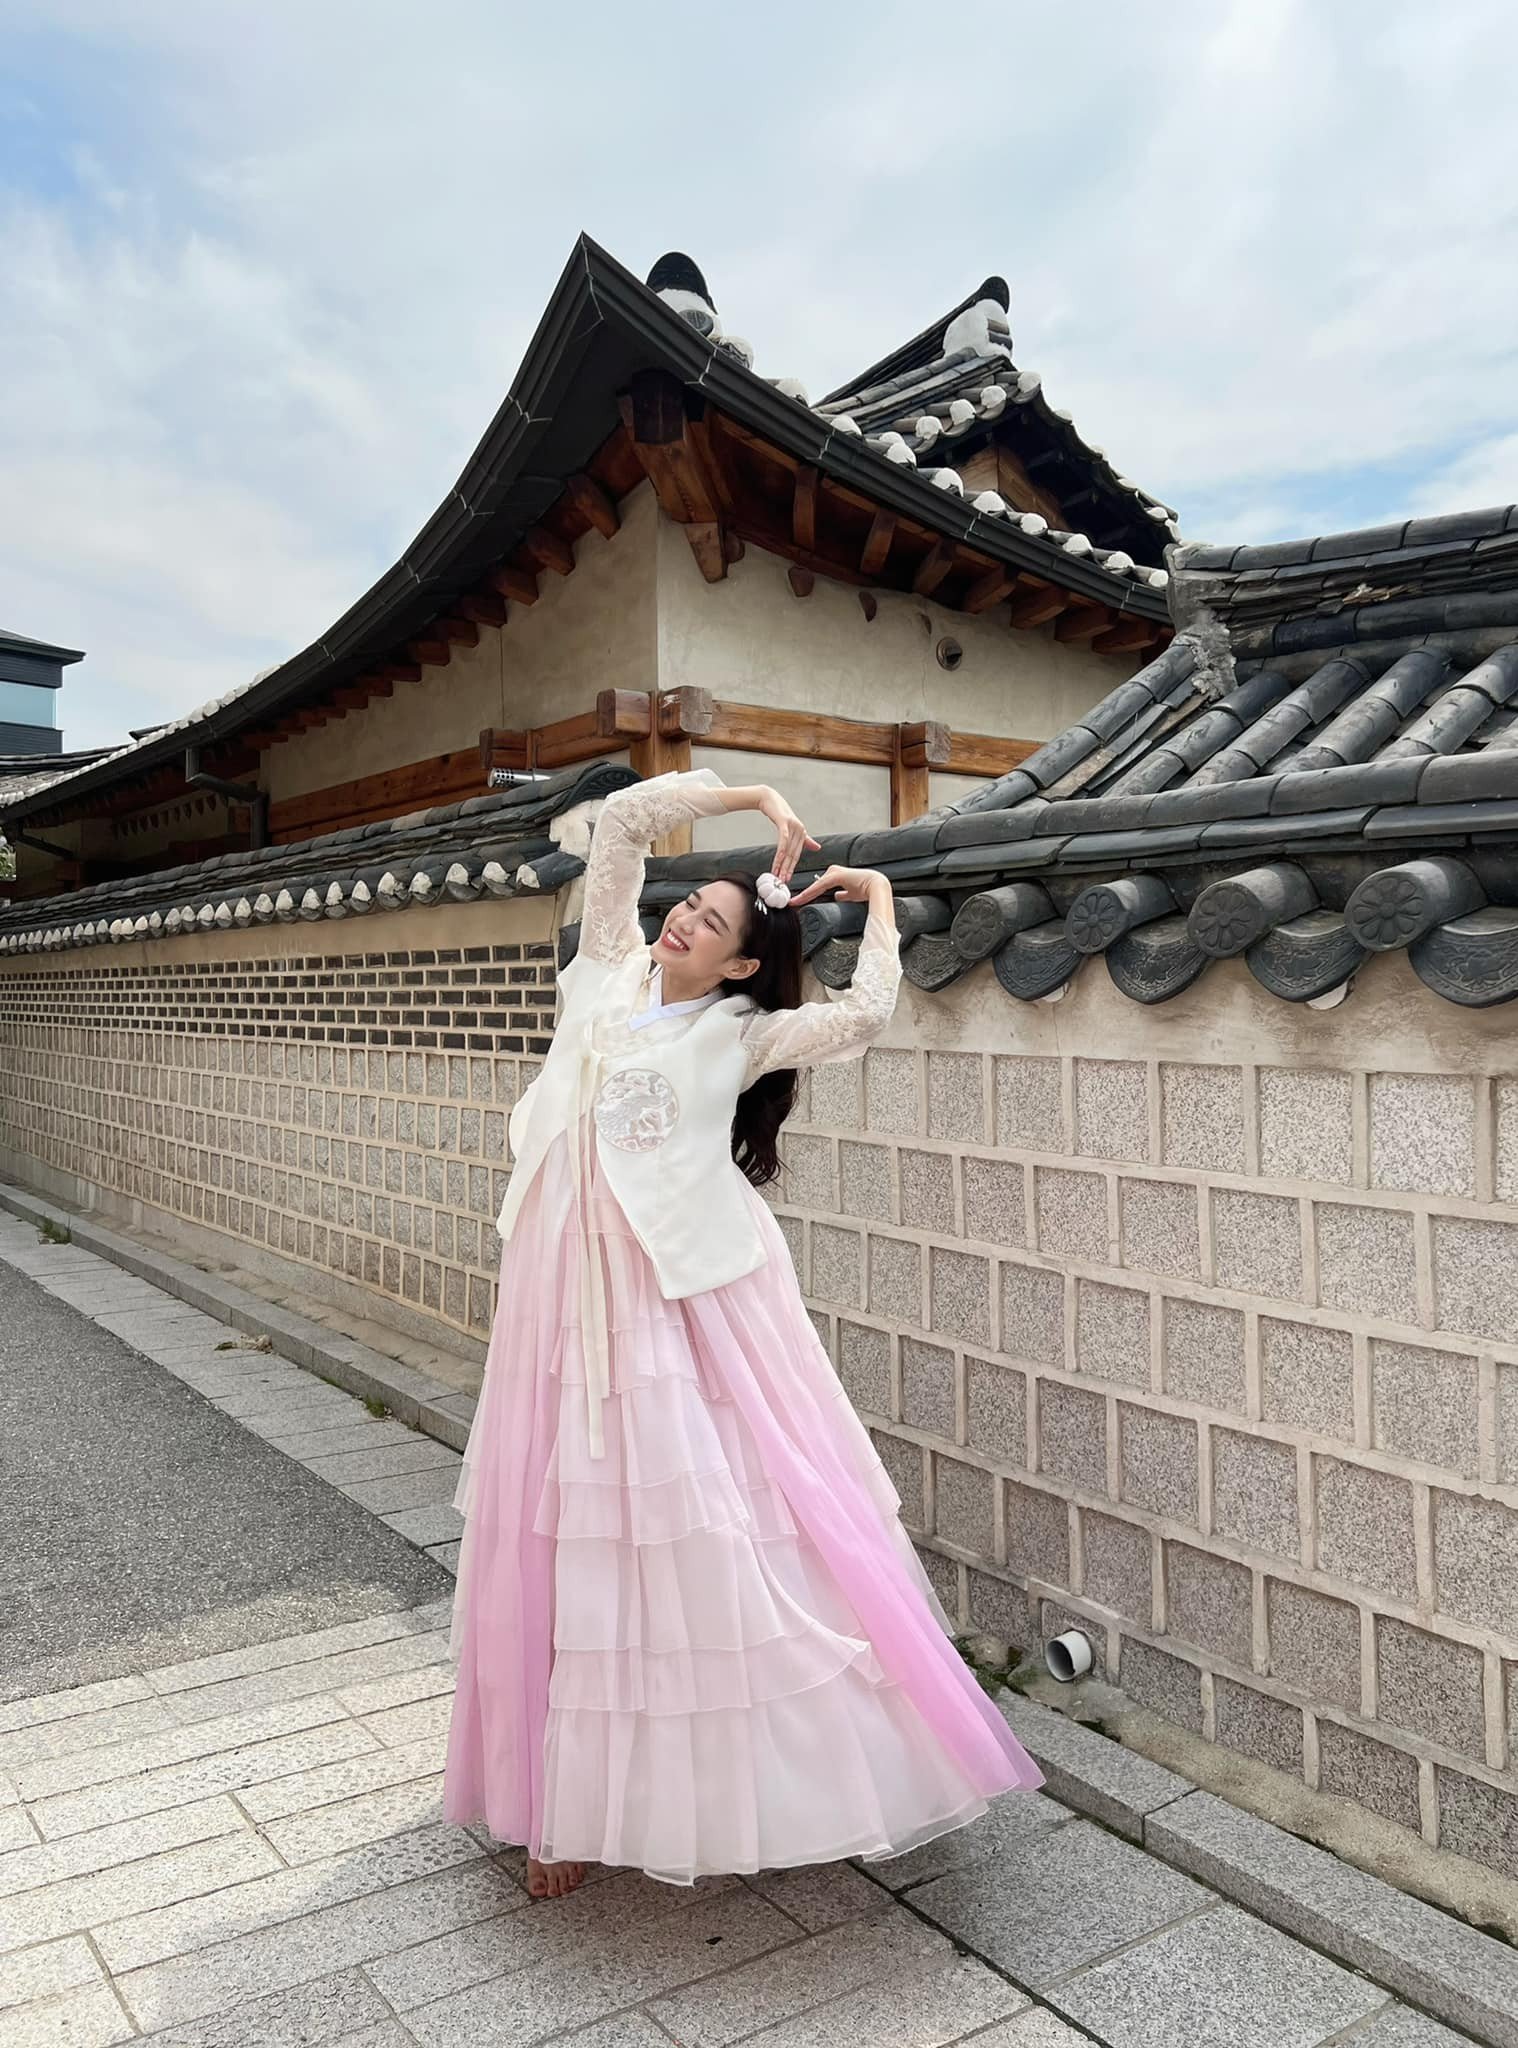 Đỗ Hà diện hanbok Hàn Quốc khiến dân tình xuýt xao - Ảnh 4